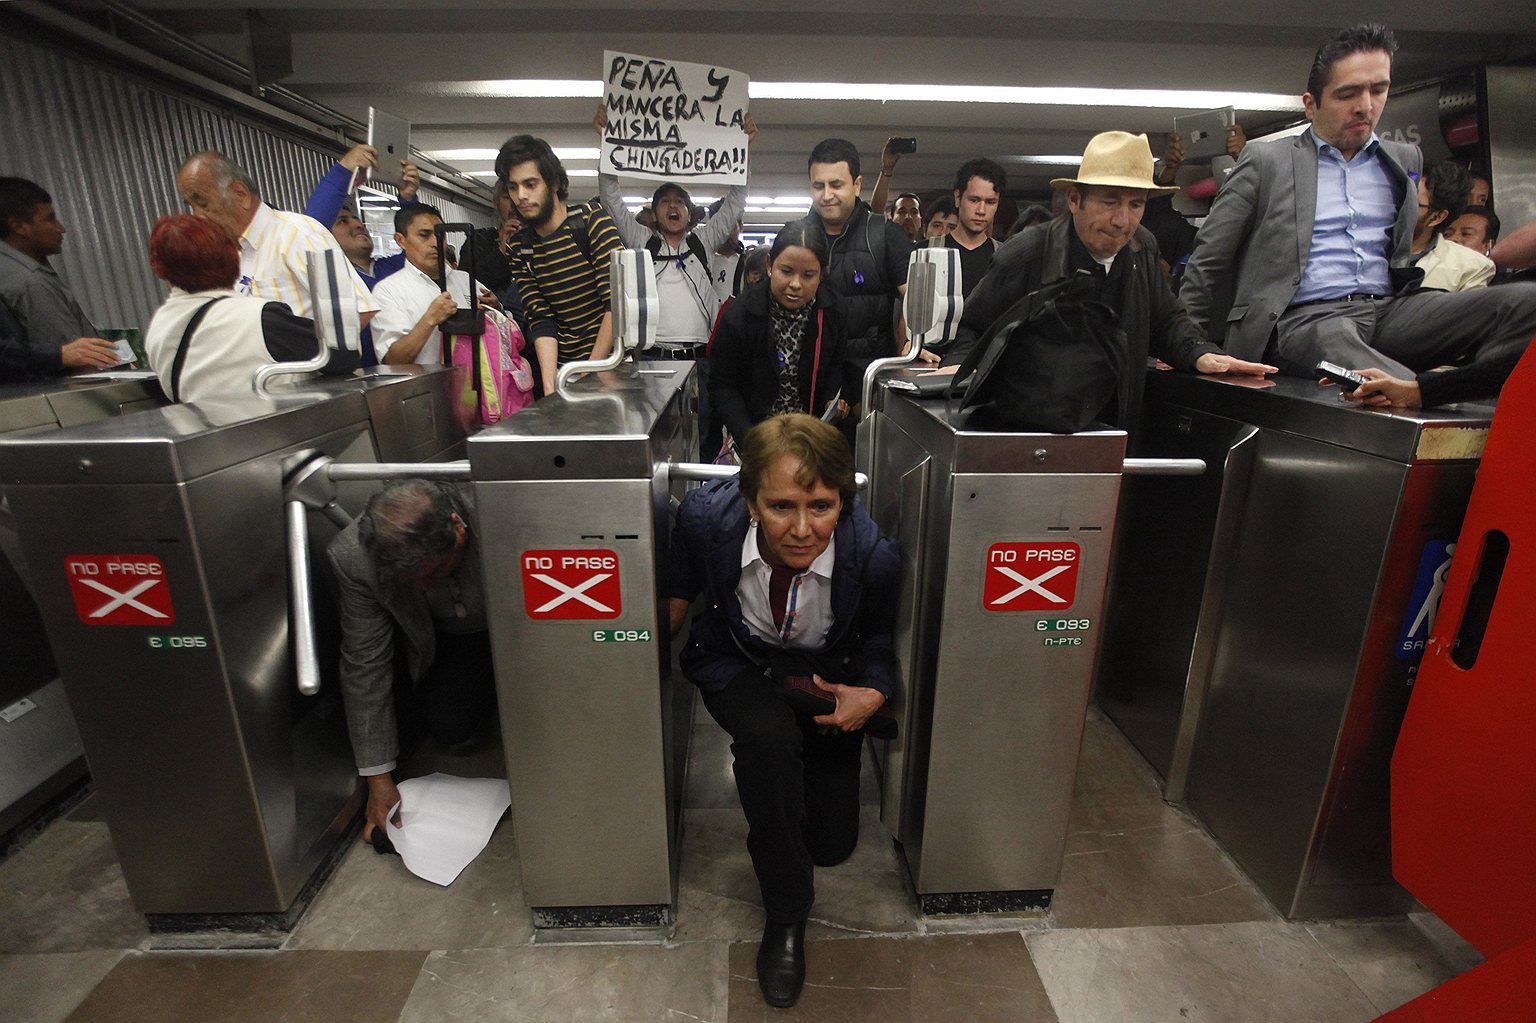 Пассажиры протестуют против повышения стоимости проезда на одной из станций метрополитена в Мехико